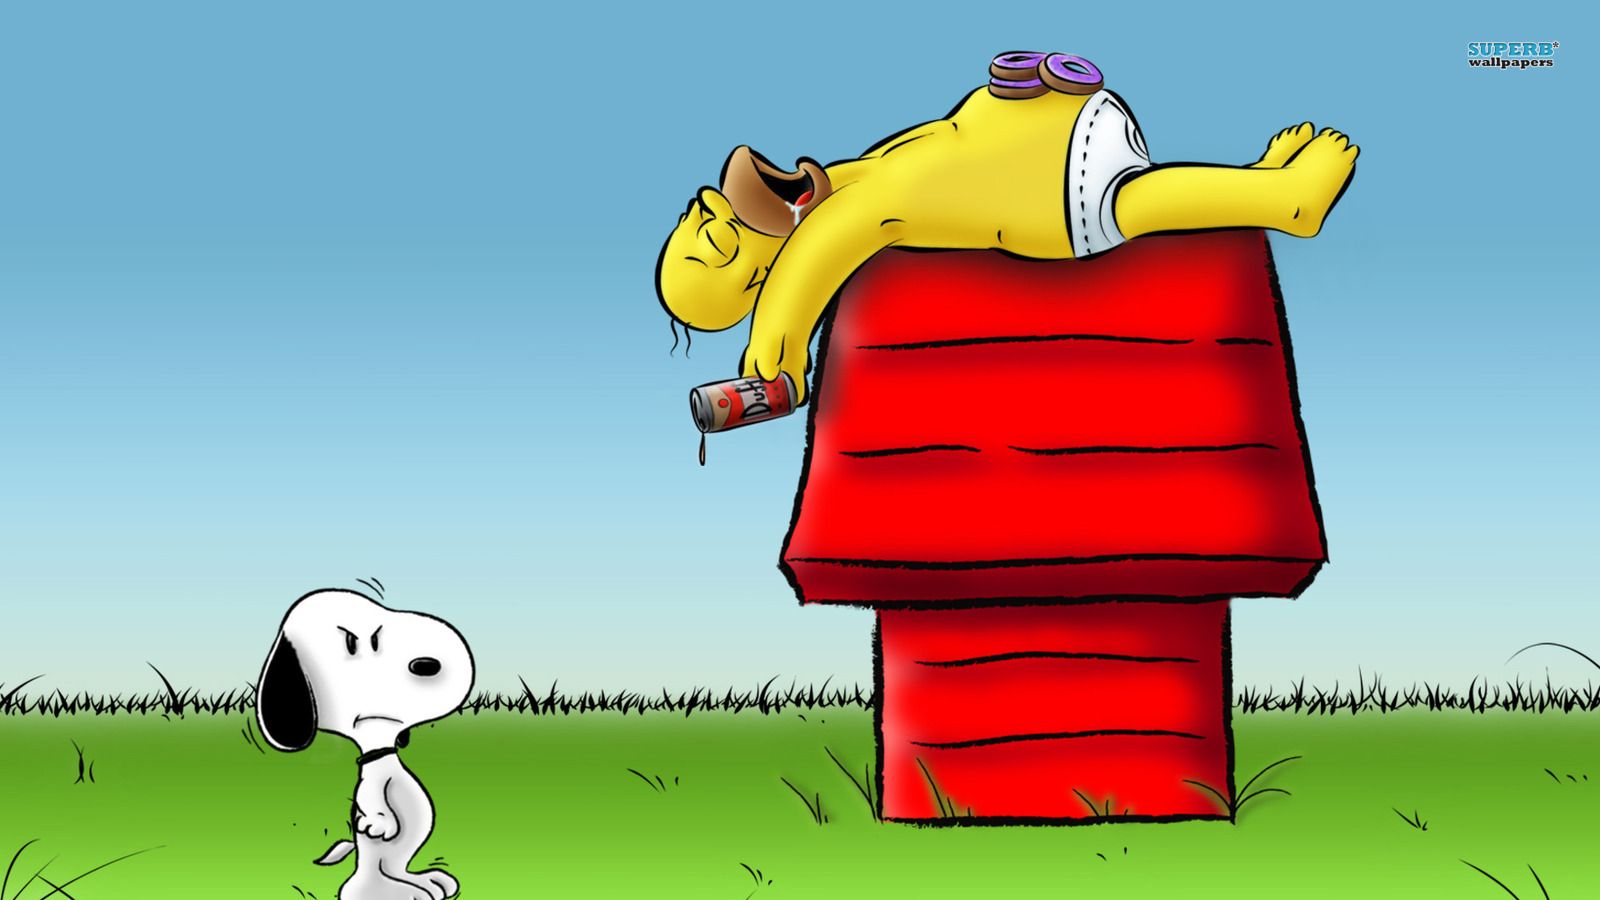 Snoopy y homer - fondo de pantalla de cacahuetes (38662700) - fanpop